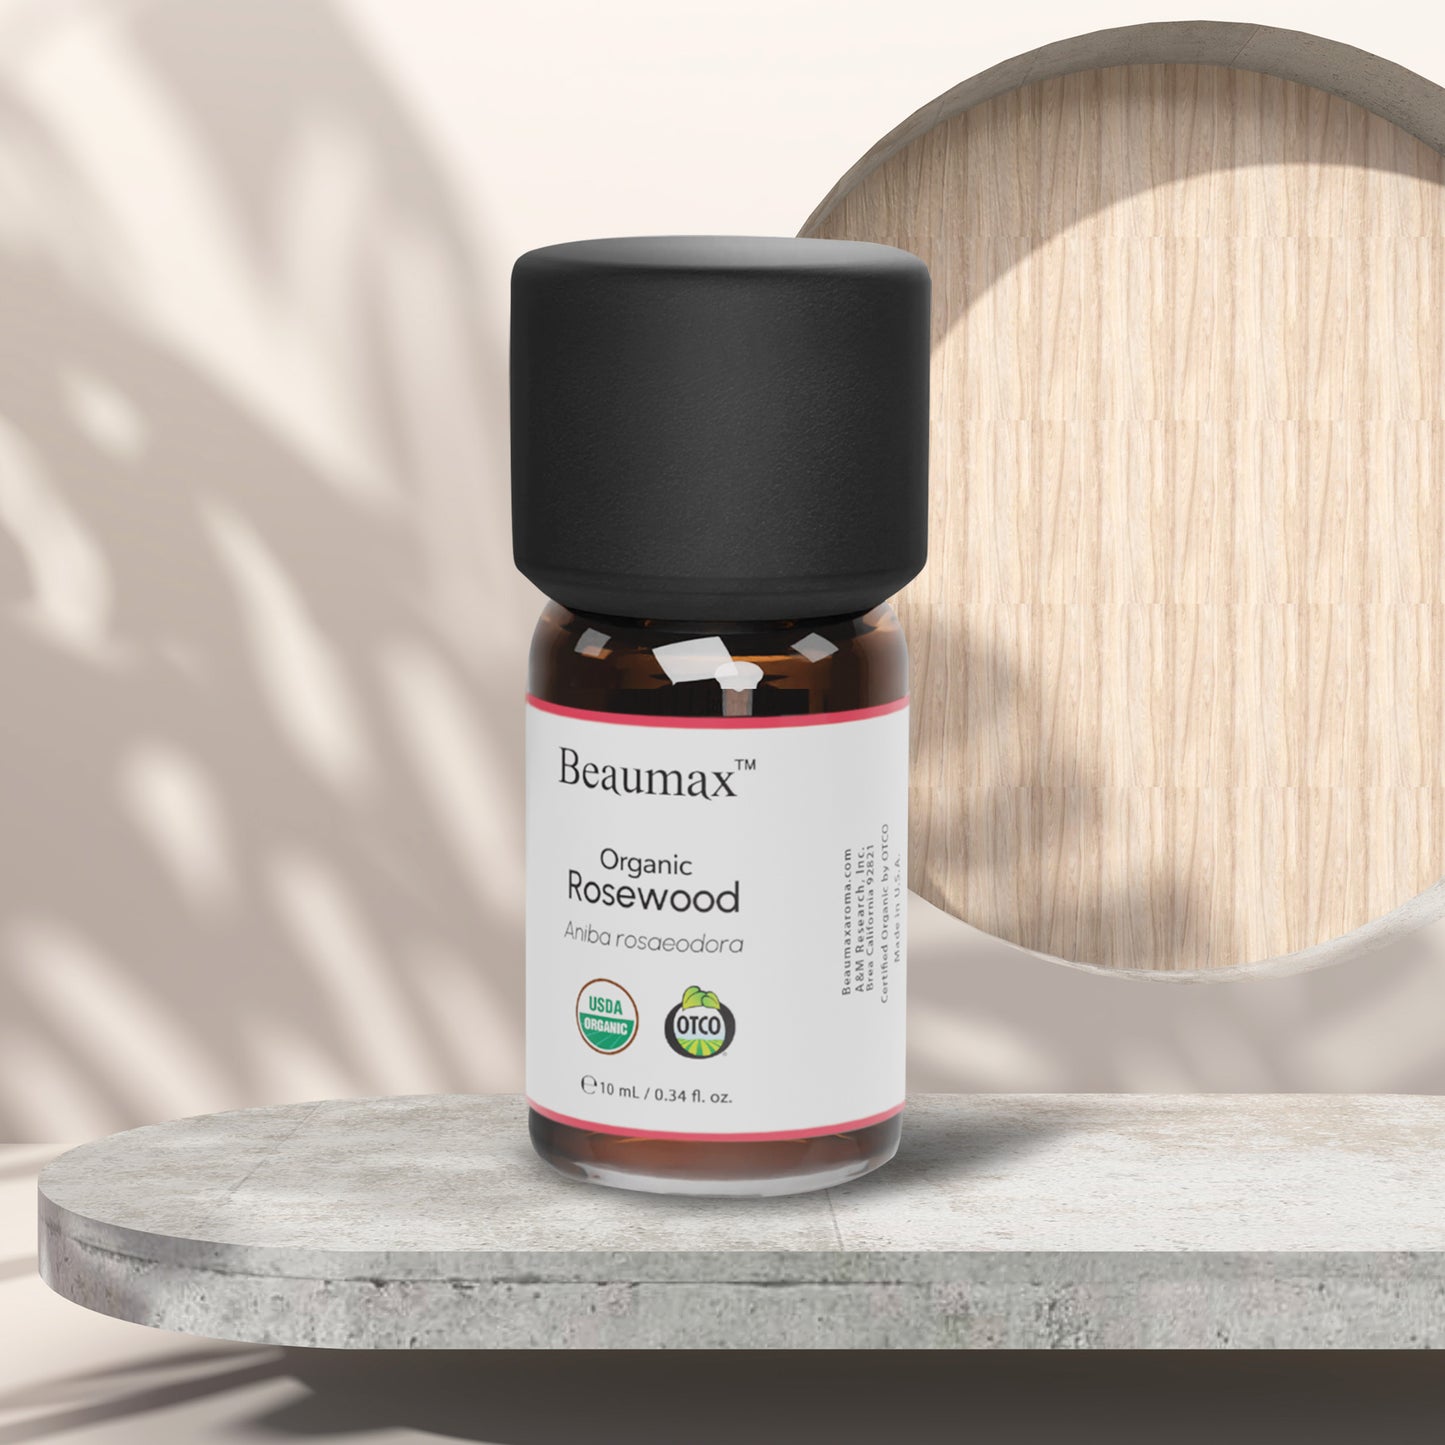 Rosewood Organic Essential Oil (Aniba Rosaeodora) 10ml